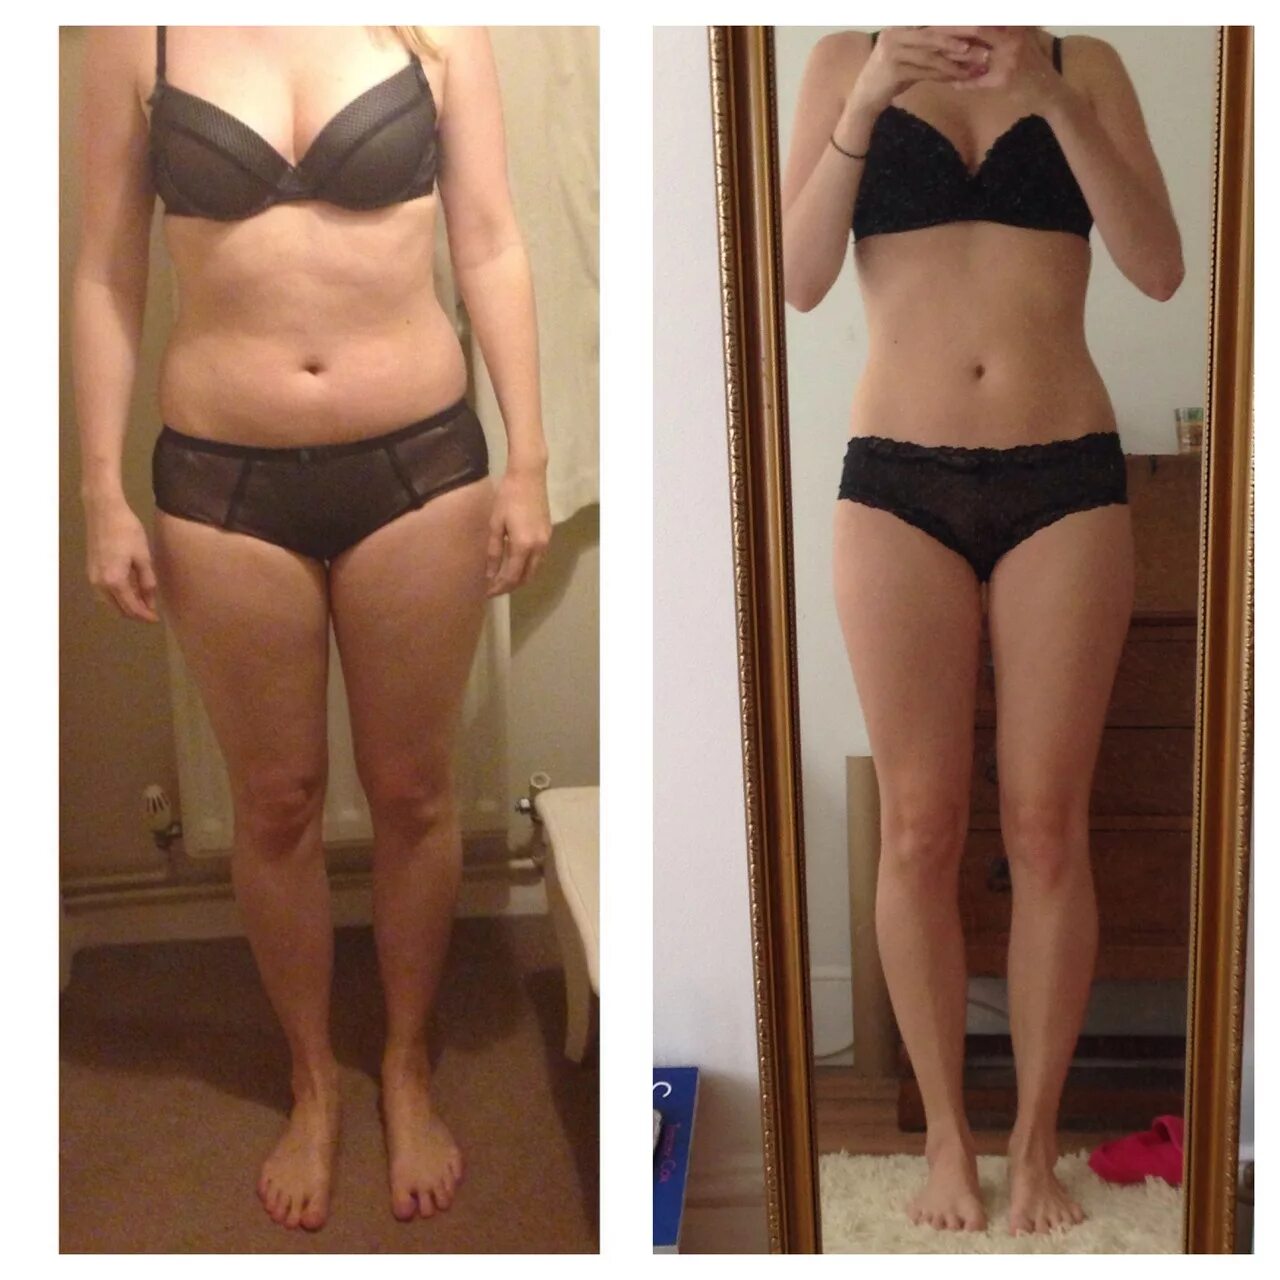 Похудение до и после. Результаты похудения. Фигура до и после. До и после похудения девушки. 1 55 кг г